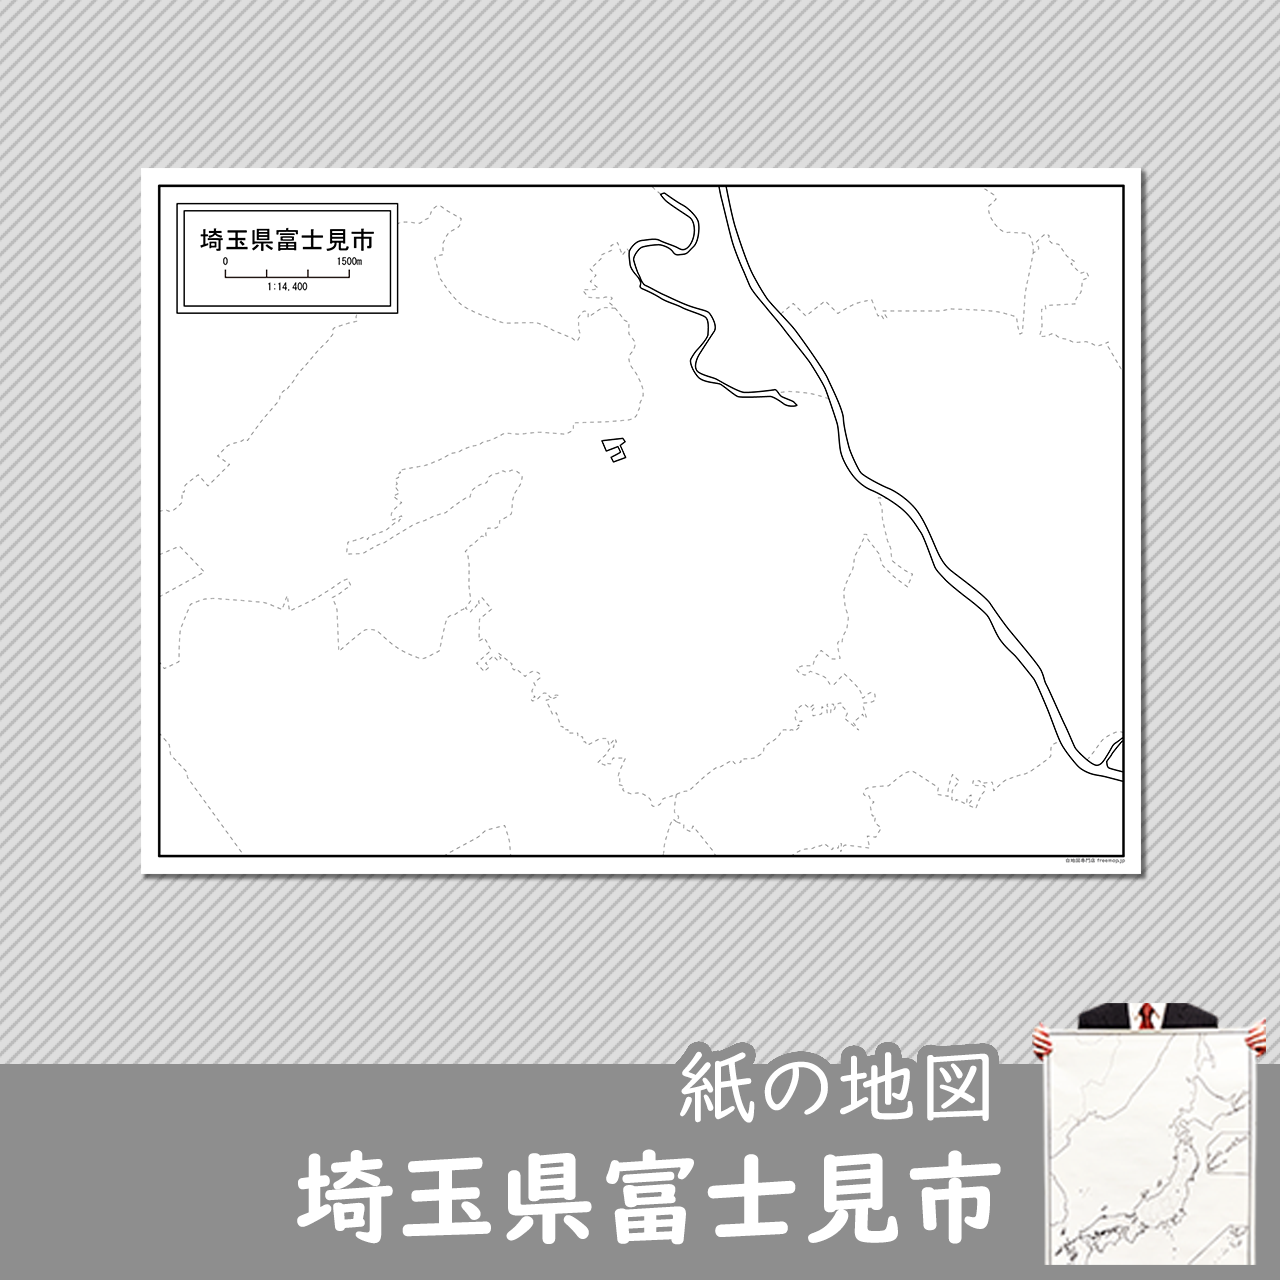 富士見市の紙の白地図のサムネイル